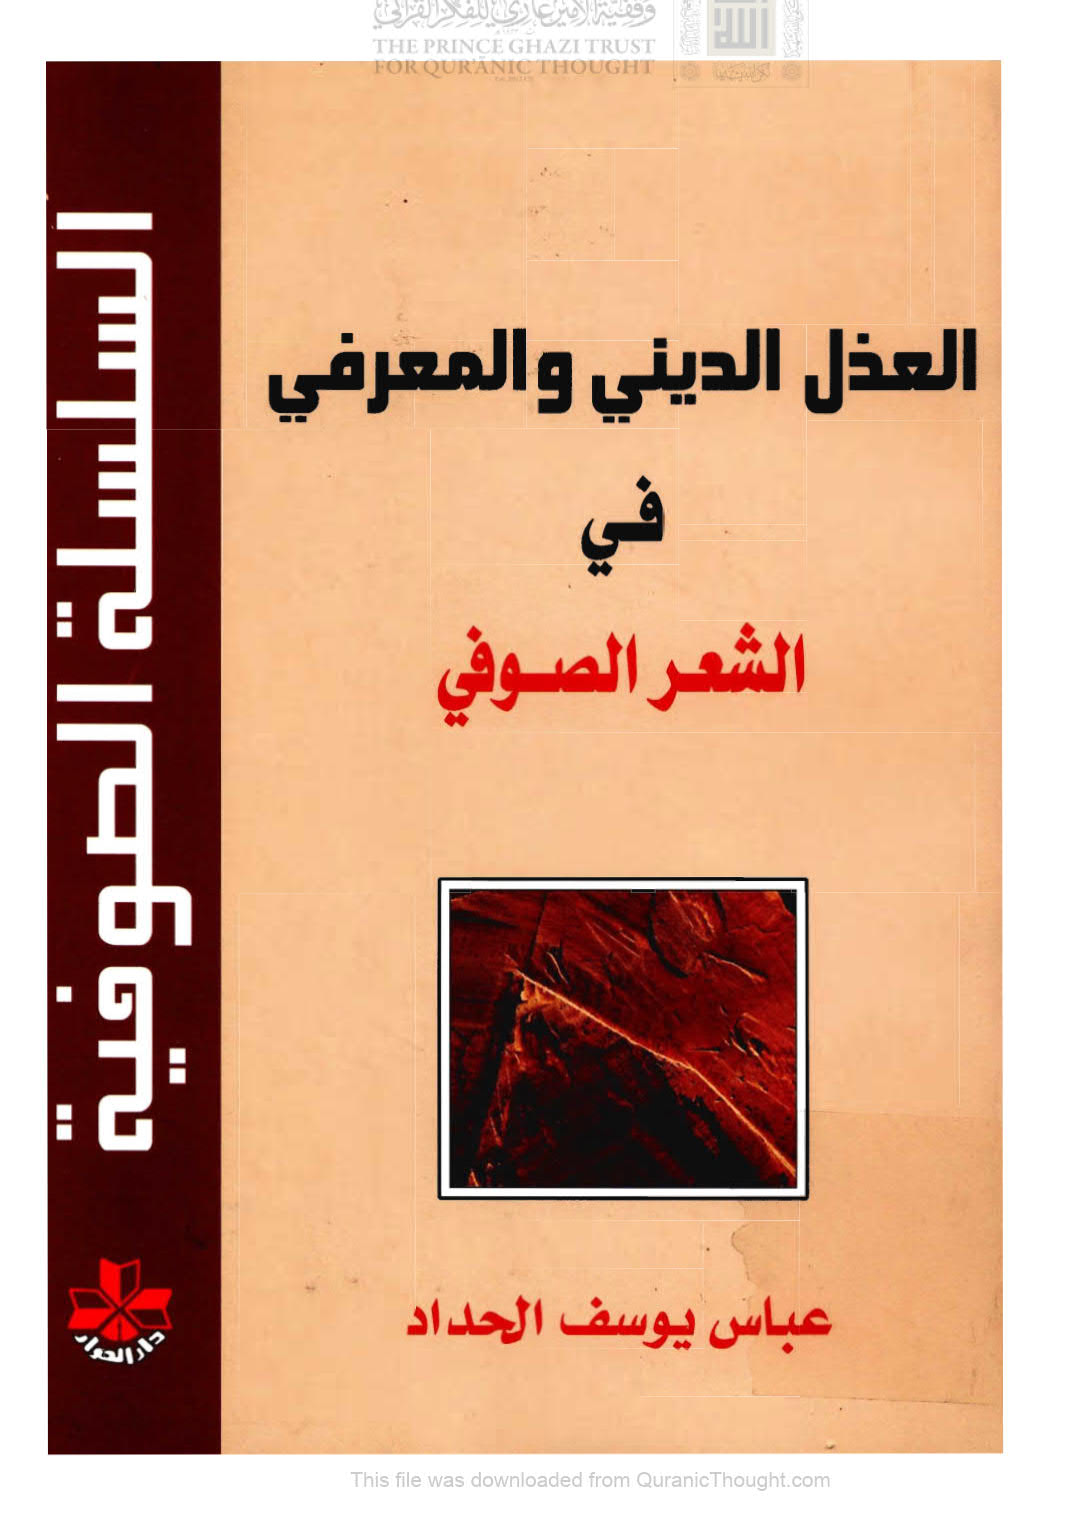 العذل الديني والمعرفي في الشعر الصوفي ( الطبعة الثانية _ 2009م )